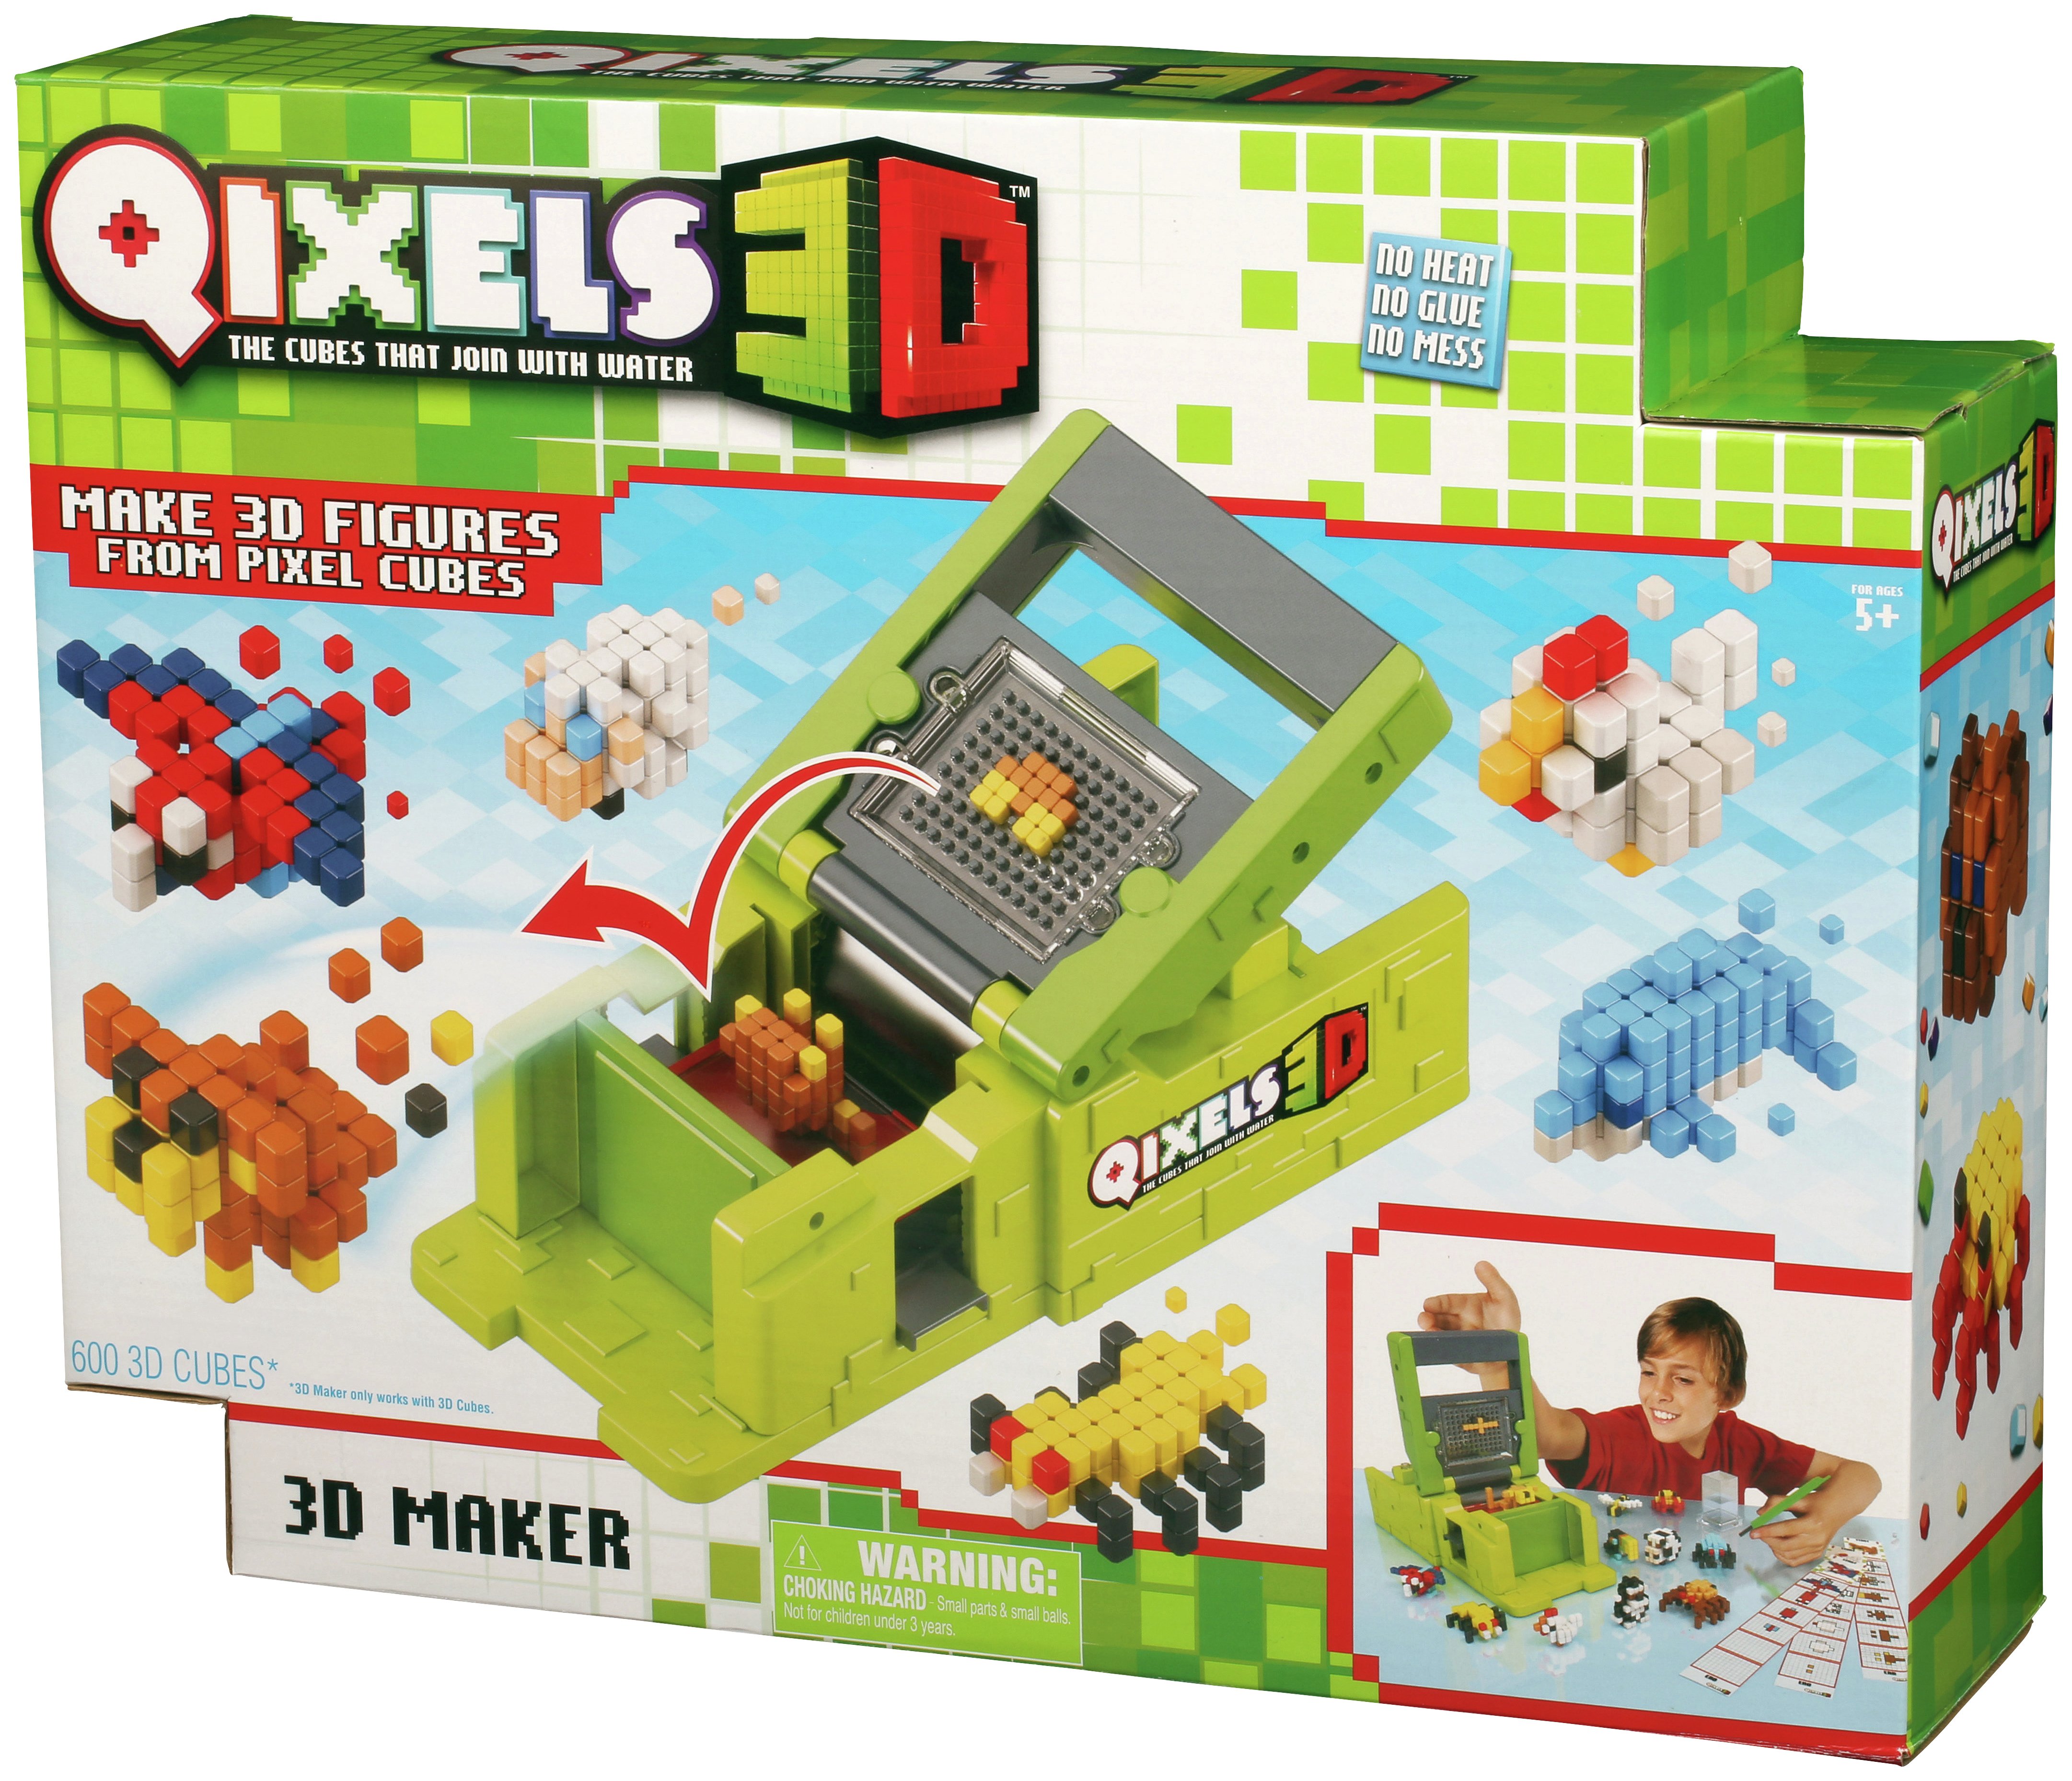 Qixels 3D Maker (5399709) | Argos Price 